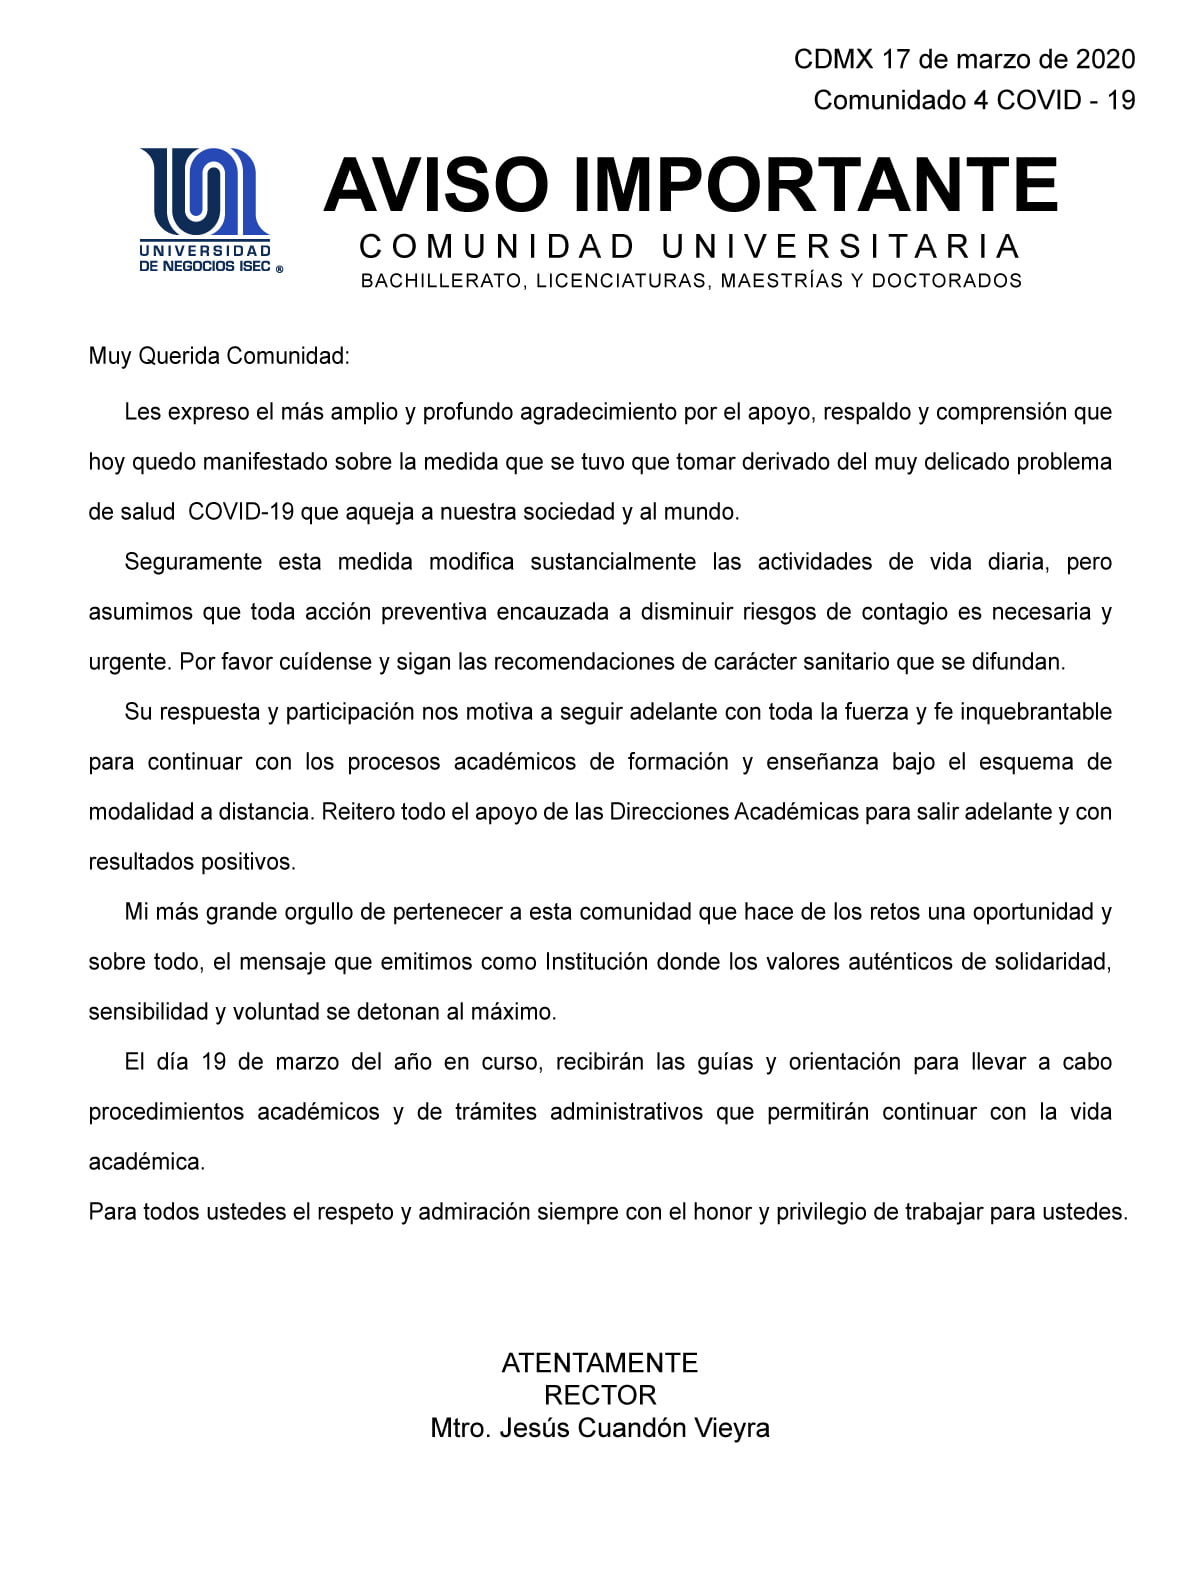 Universidad de Negocios ISEC - Comunicado del 17 marzo sobre COVID-19